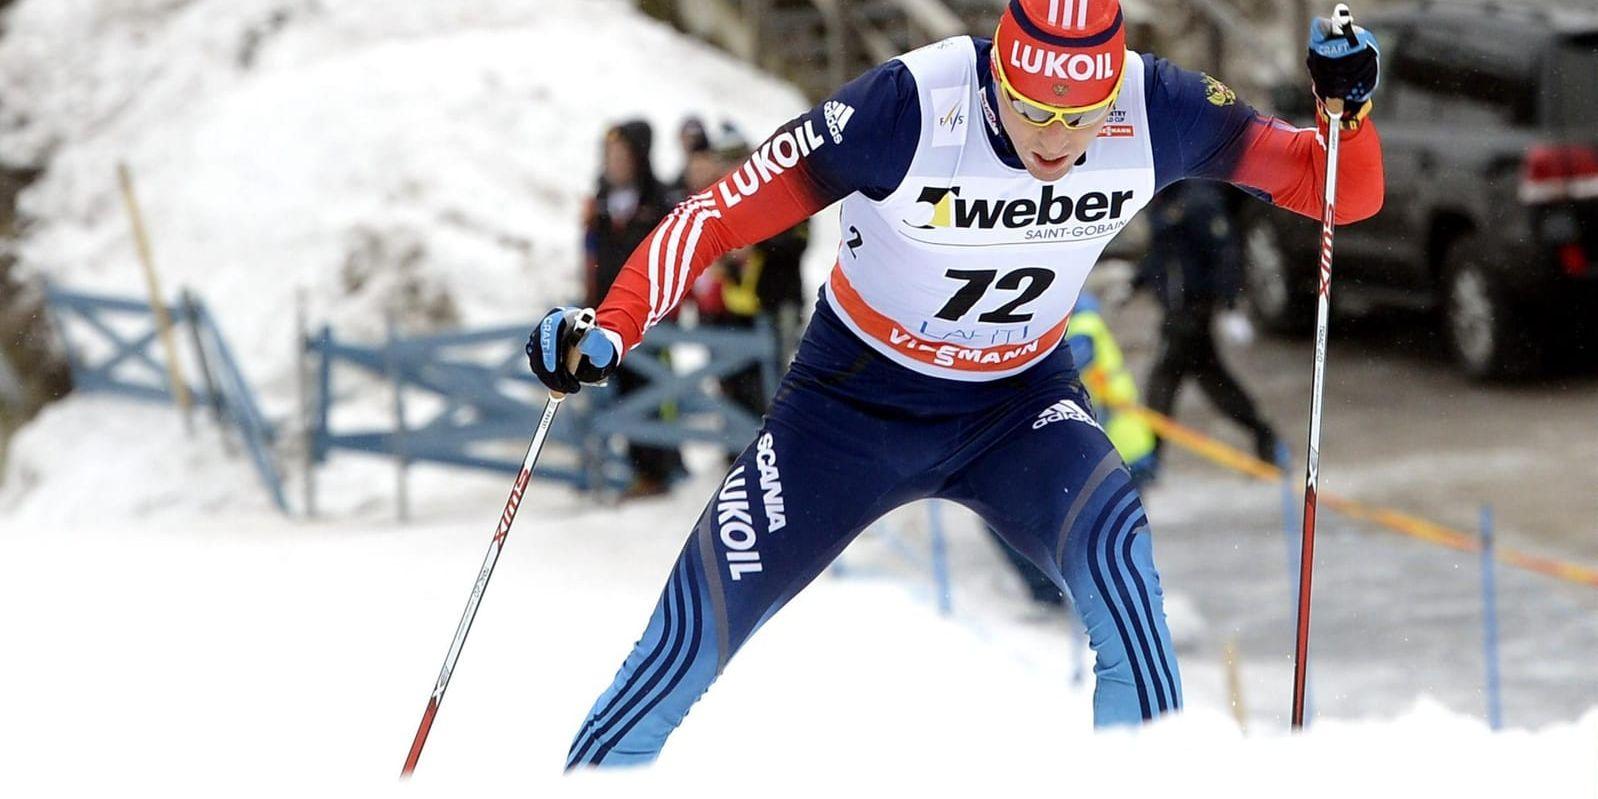 Skidstjärnan Alexander Legkov, som tog guld i Sotji 2014, uppges vara en av ryssarna som nu stoppas från OS i Pyeongchang. Arkivbild.